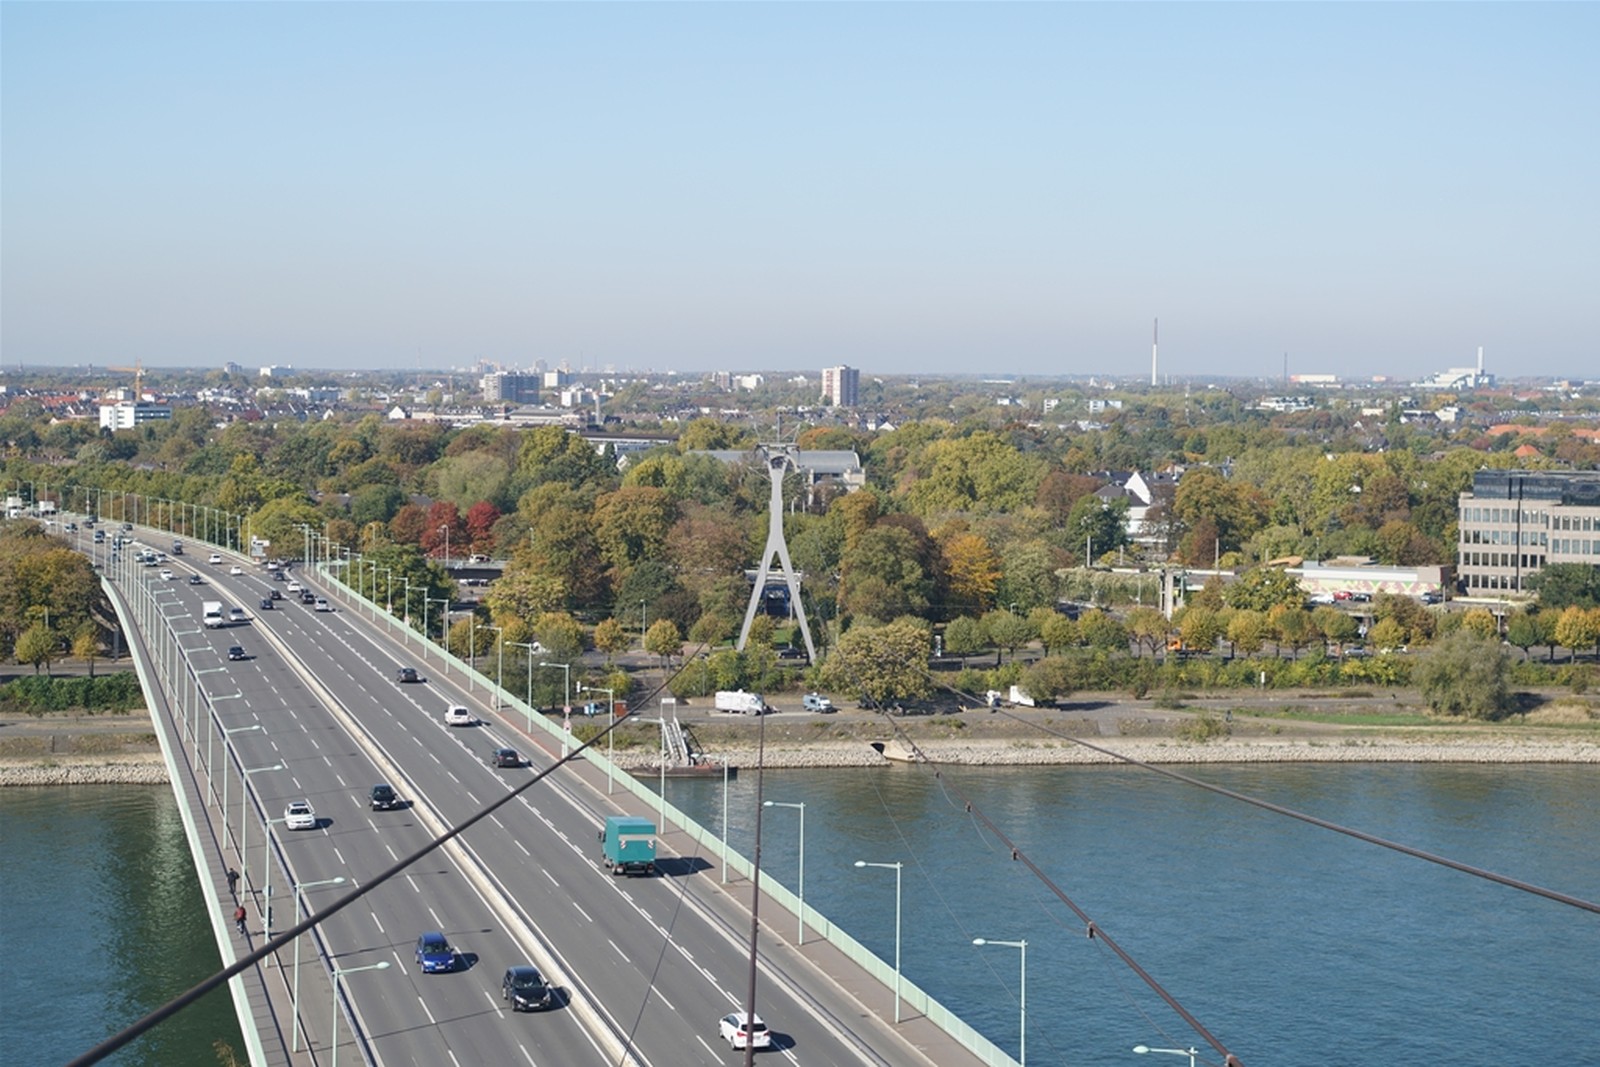 Mit der Kölner Seilbahn können Fahrgäste die Stadt Köln aus der Vogelperspektive erleben – die Videosicherheitstechnik von Dallmeier sorgt dabei für einen sicheren Betrieb..